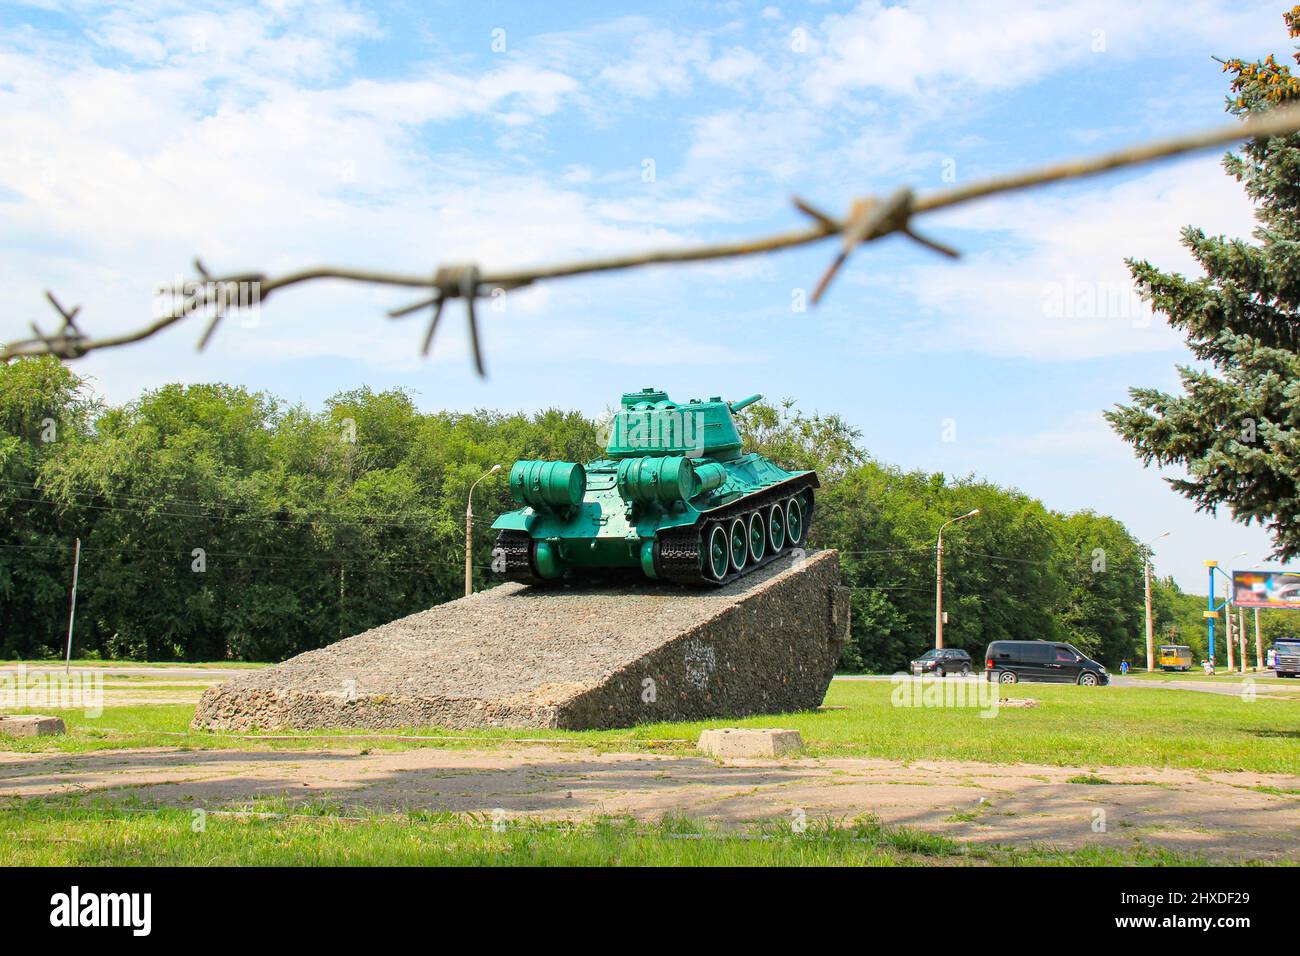 Monumento al vecchio serbatoio sovietico T-34. Un carro armato militare si erge su un piedistallo sullo sfondo di un cielo blu, filo spinato, alberi verdi, strada della città. Foto Stock